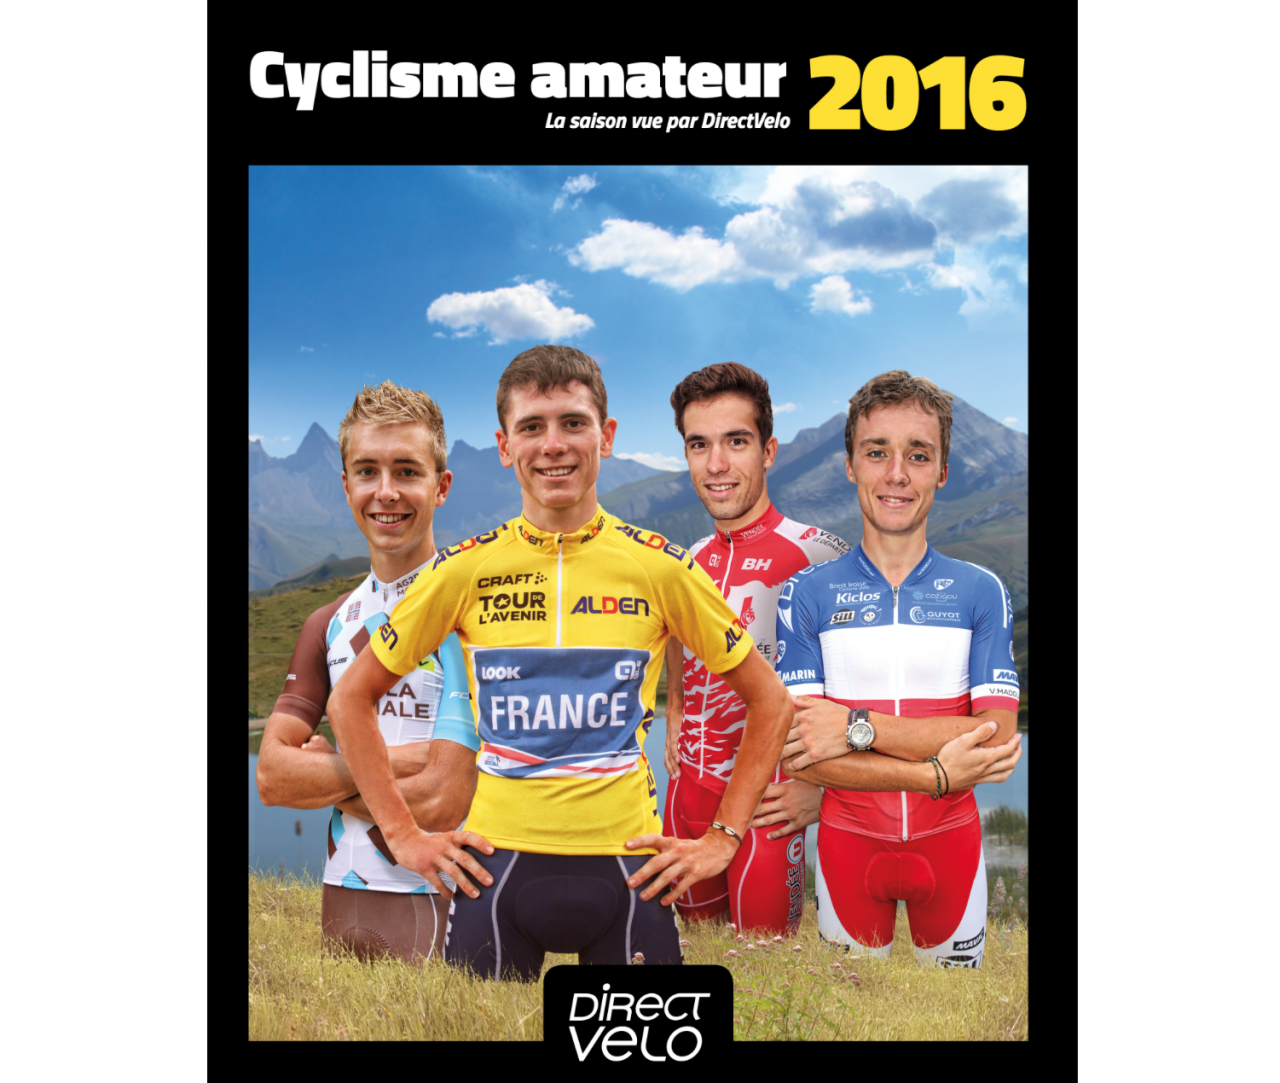 Cyclisme Amateur 2016: le livre arrive